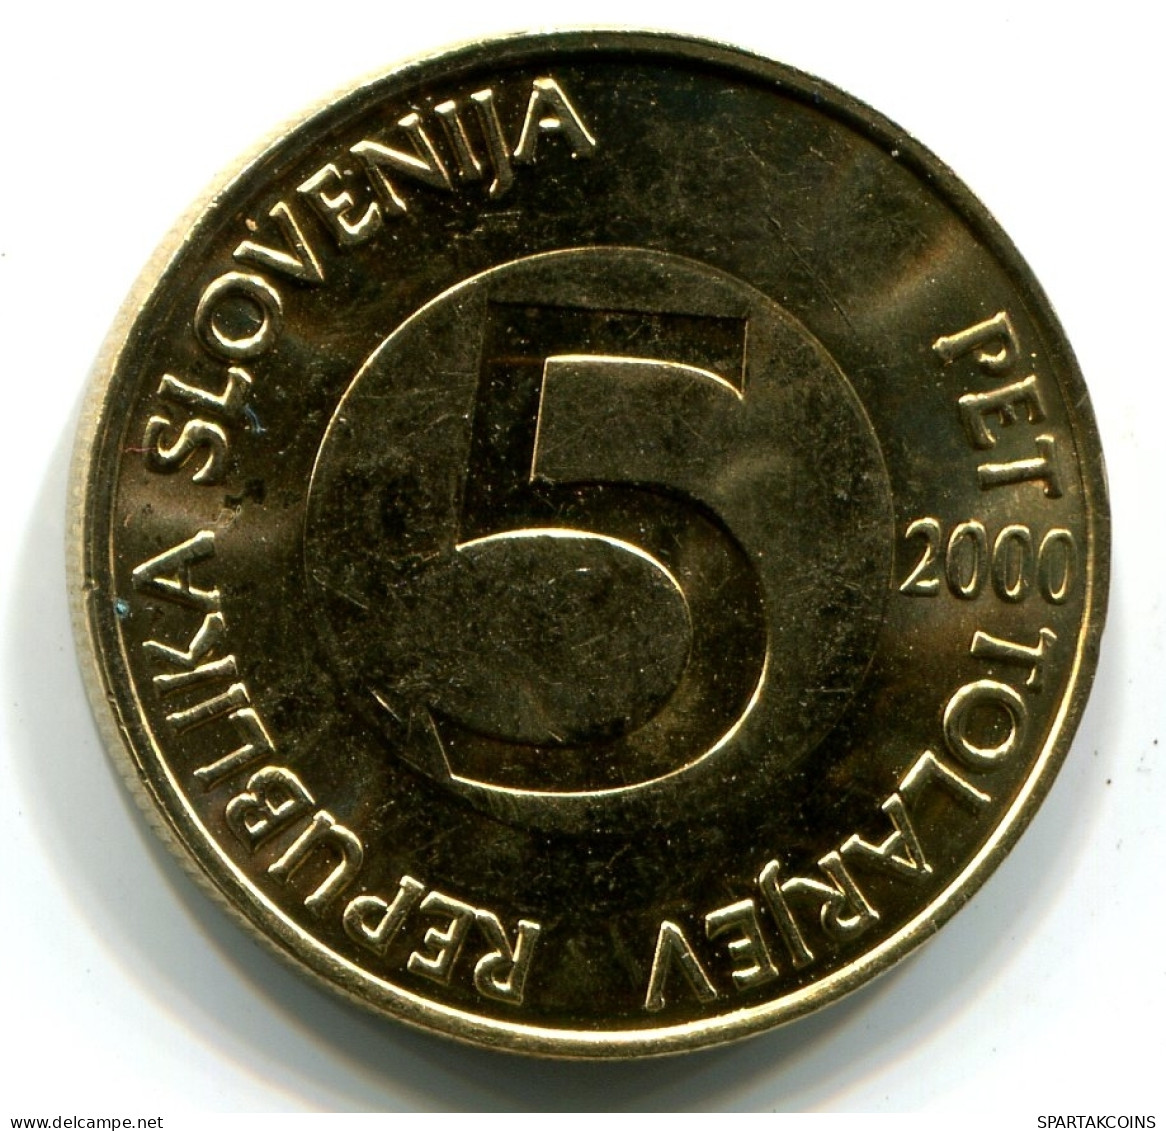 5 TOLAR 2000 SLOVENIA UNC Coin HEAD CAPRICORN #W11079.U - Slovenia